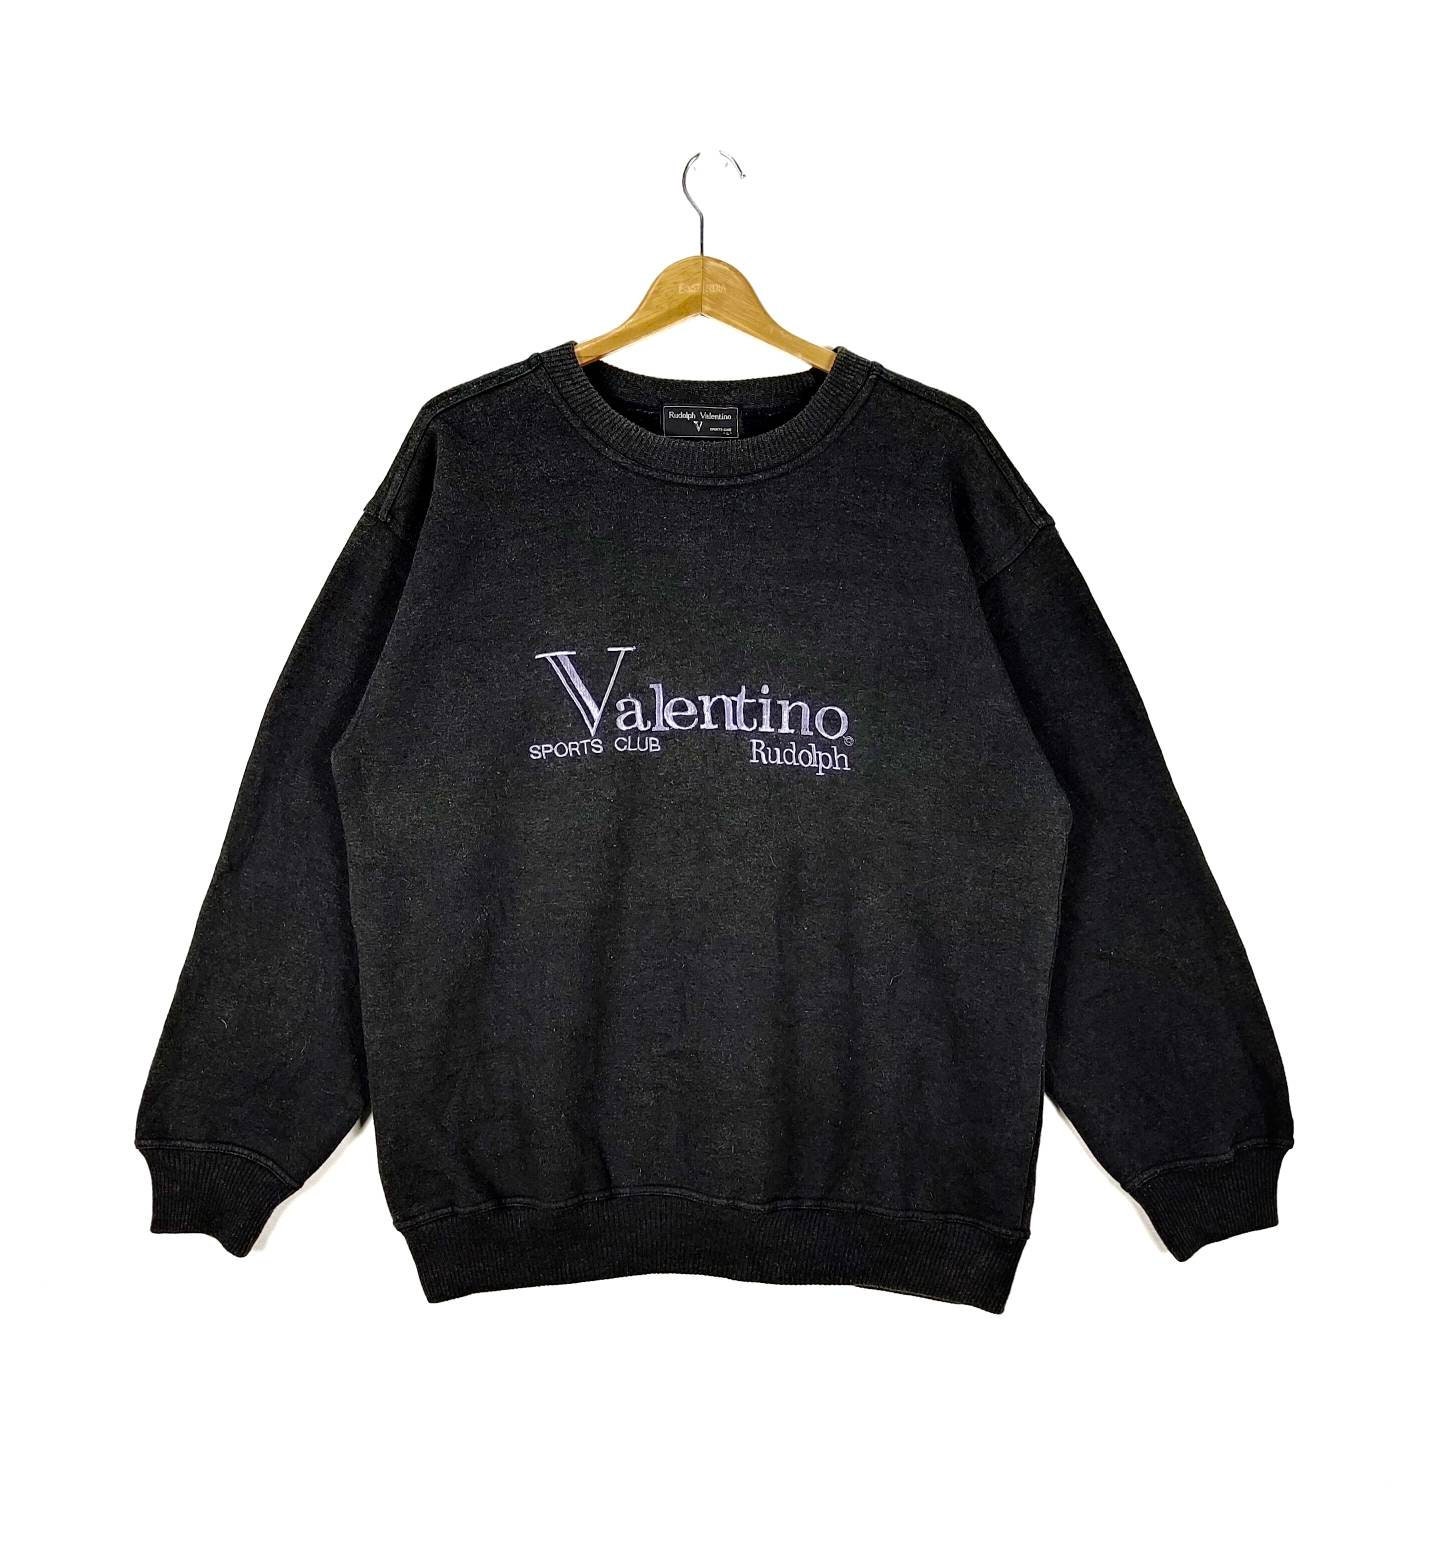 Pudsigt efter skole højde Vintage Rudolph Valentino Sport Club Sweatshirt - Etsy